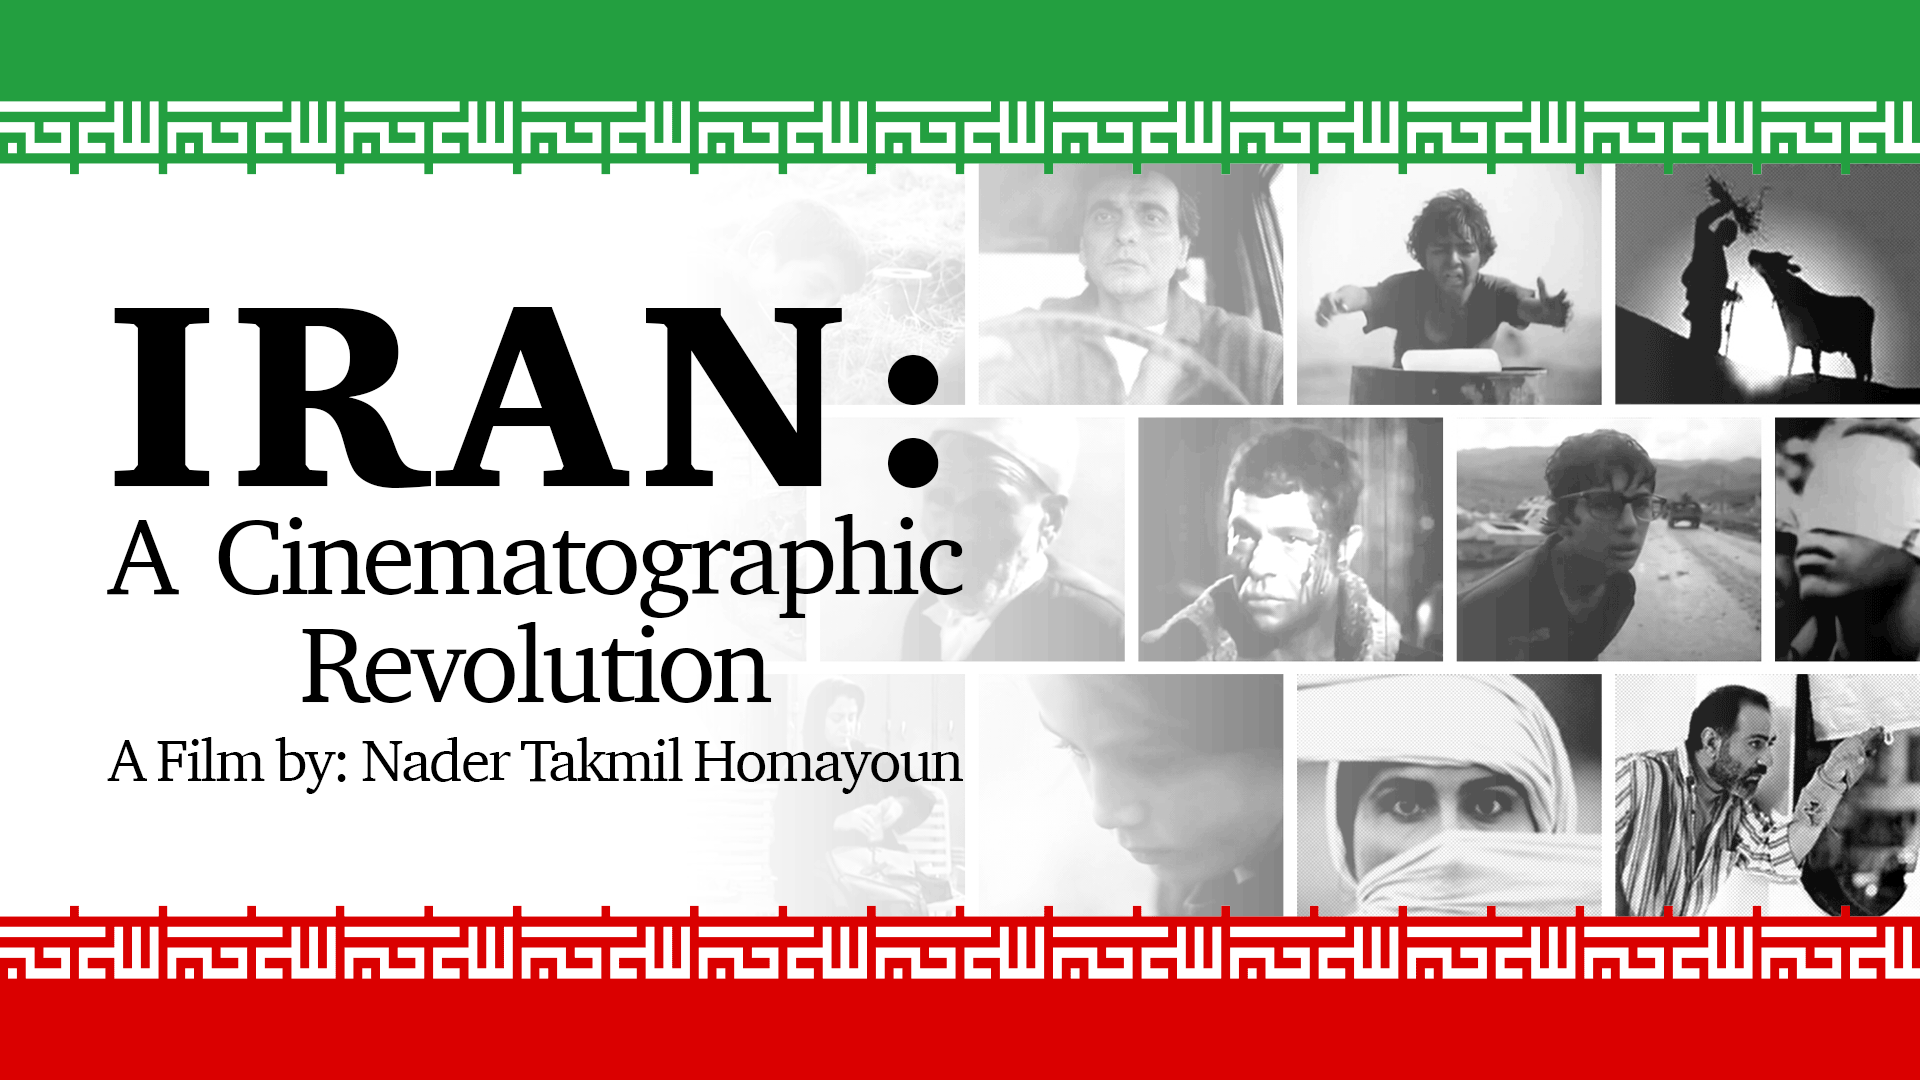 Iran: A Cinematographic Revolution (2006)